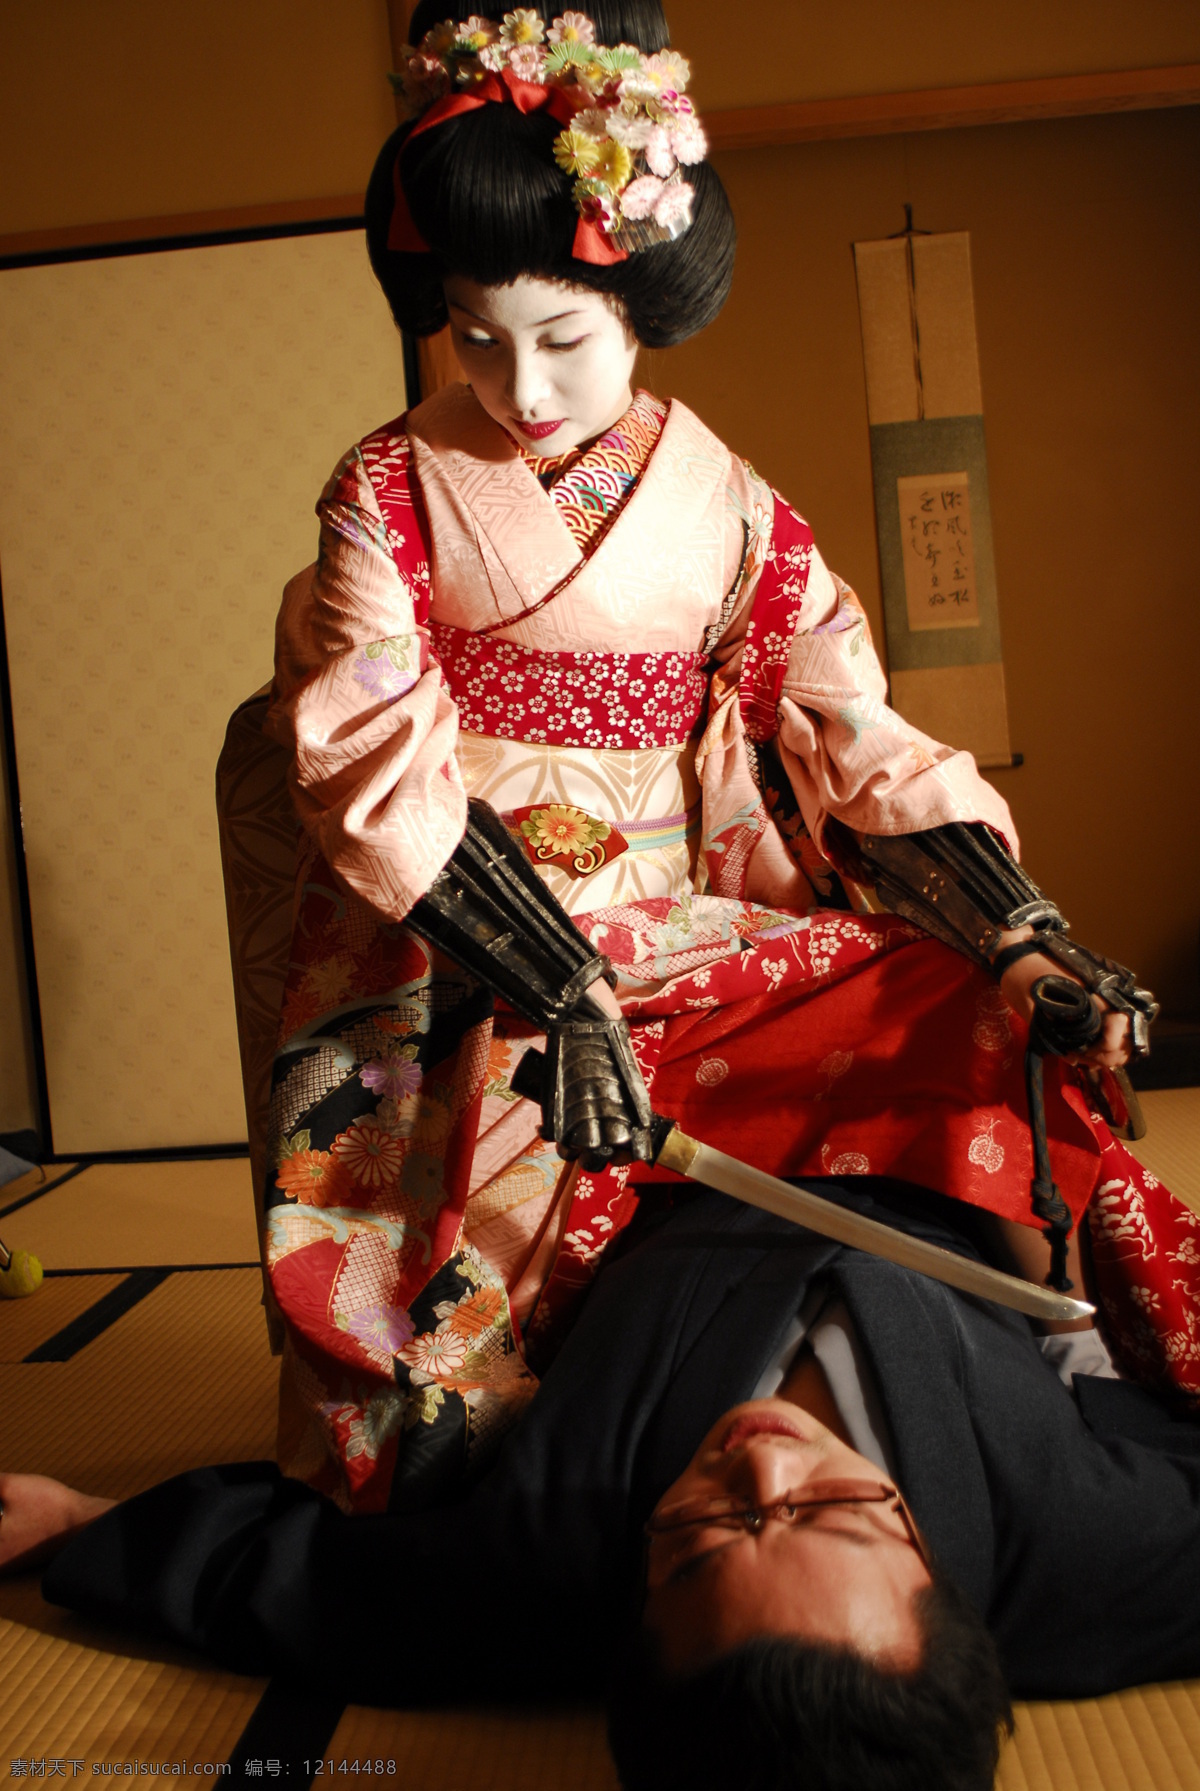 穿 和服 美女图片 日本女孩 女性 女人 美女 日本武士 武士刀 人物图片